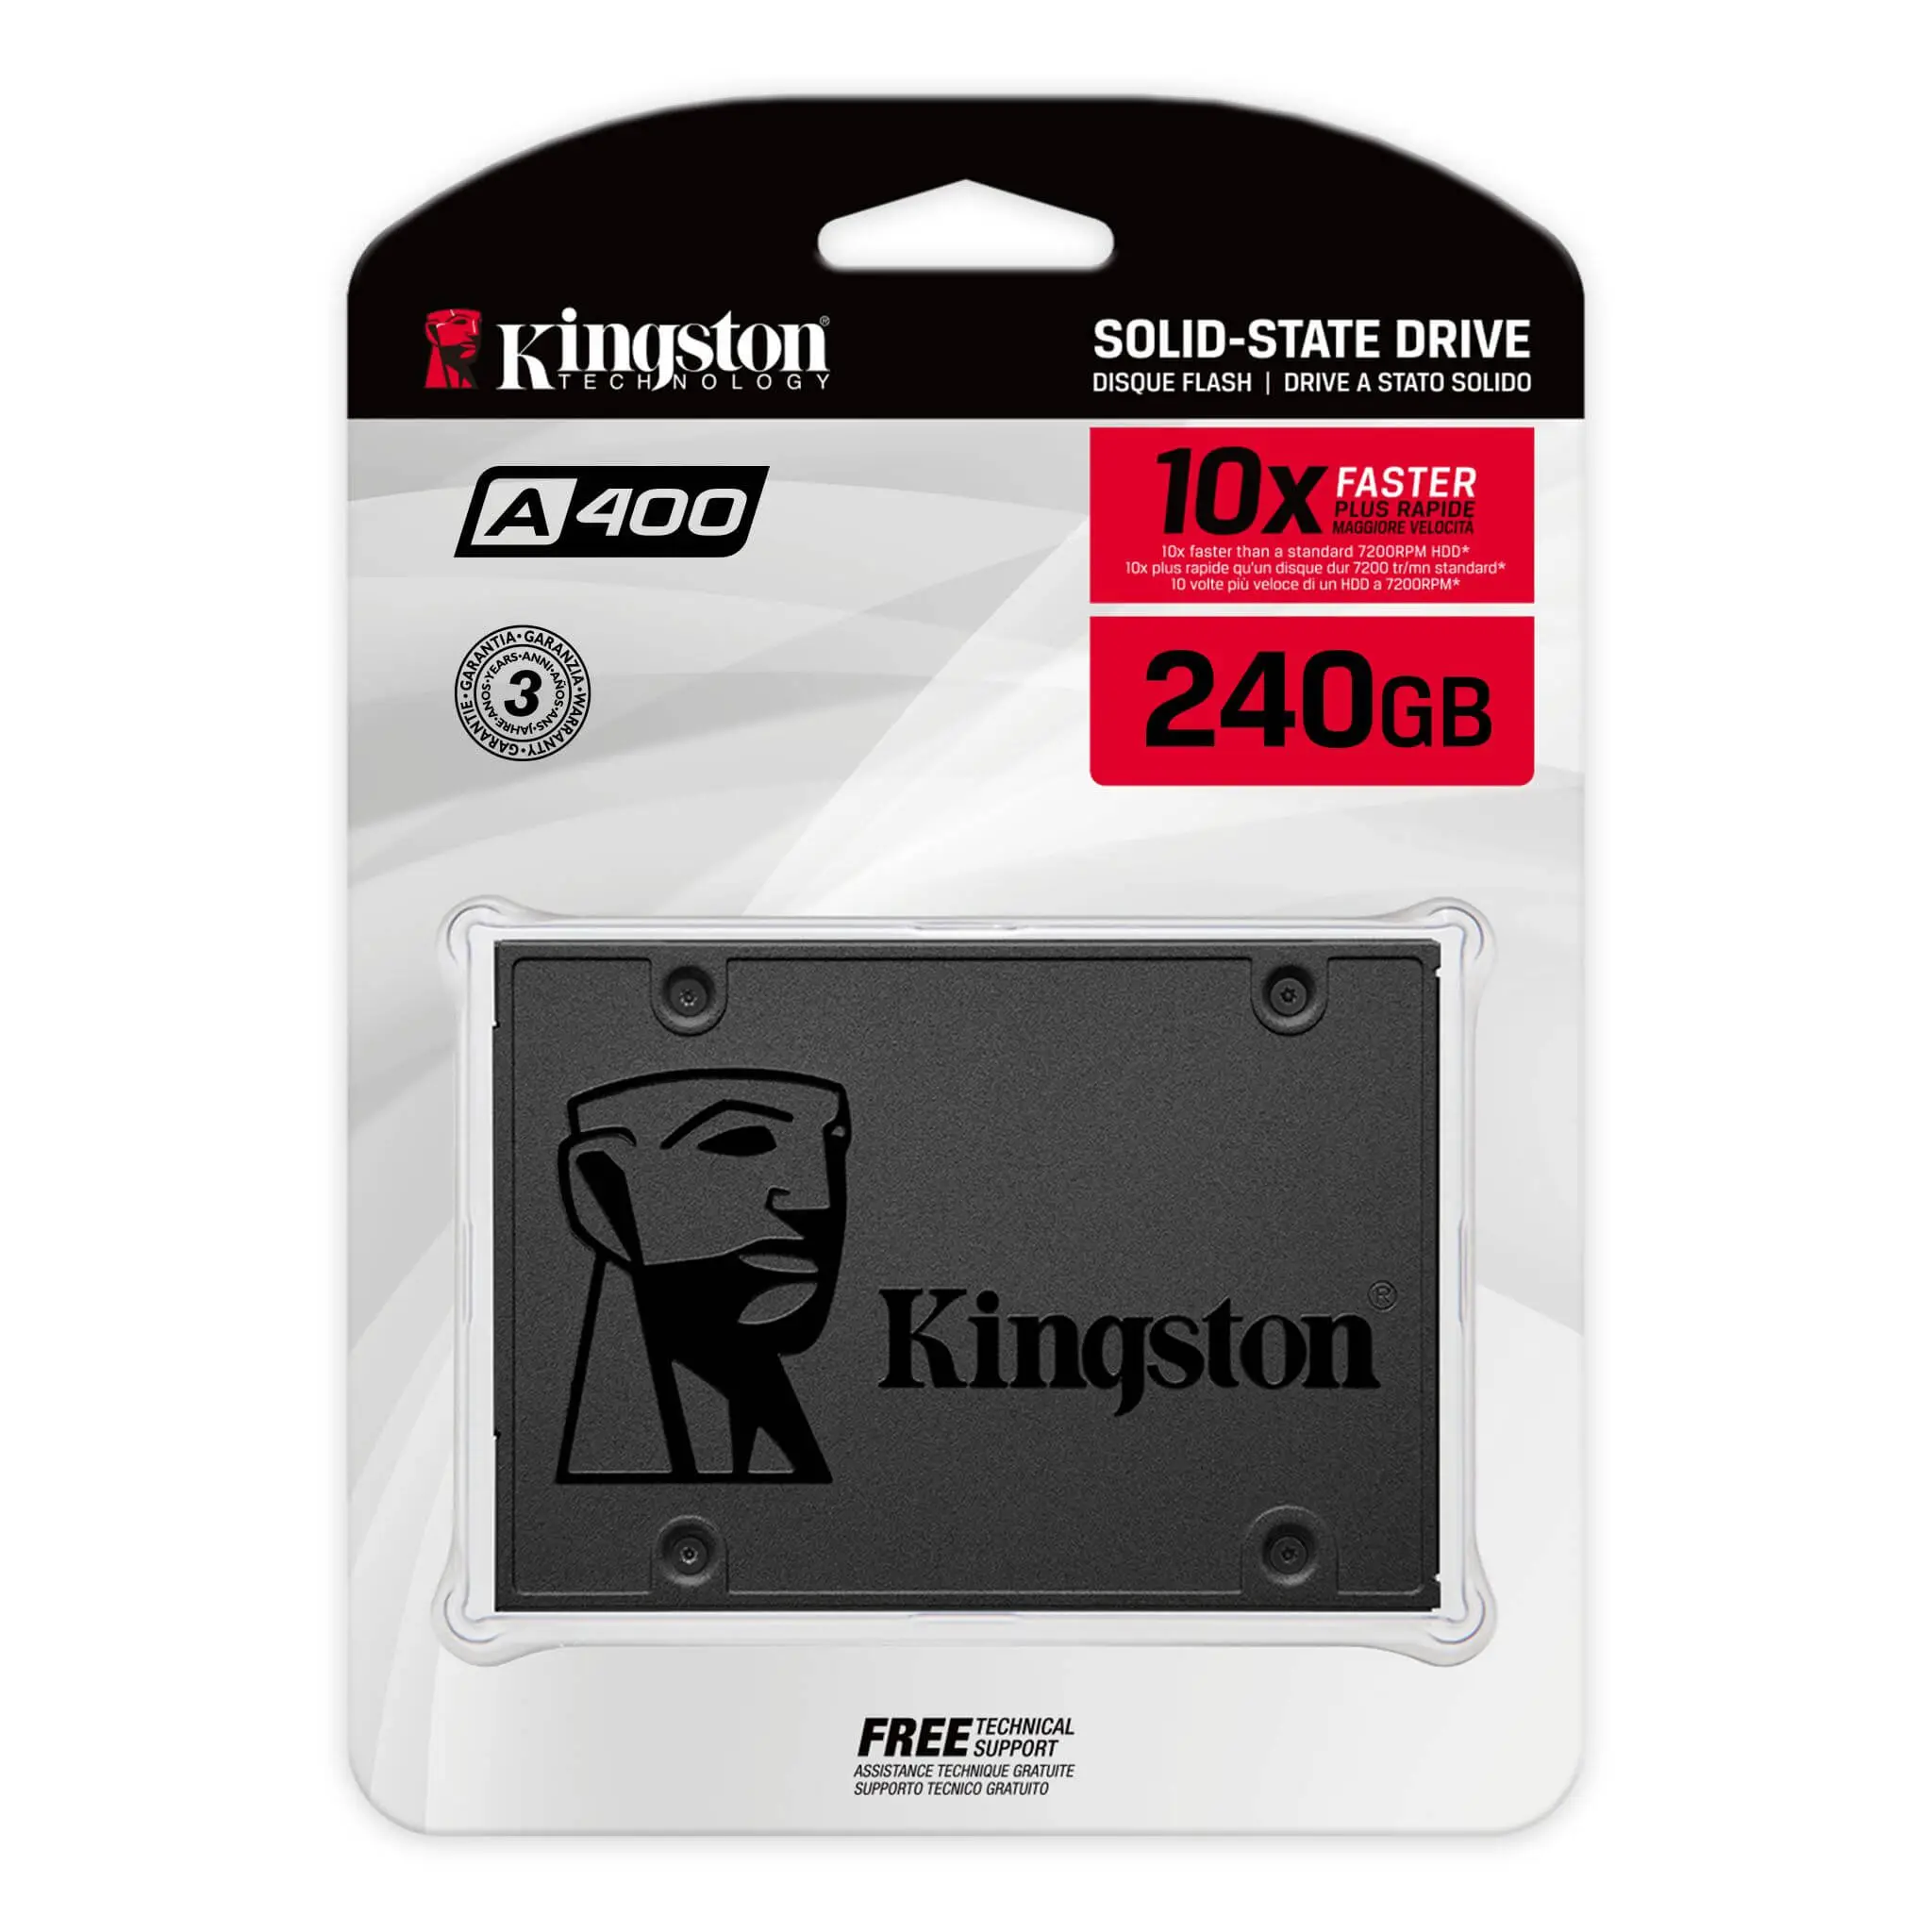 SSD Kingston economicos